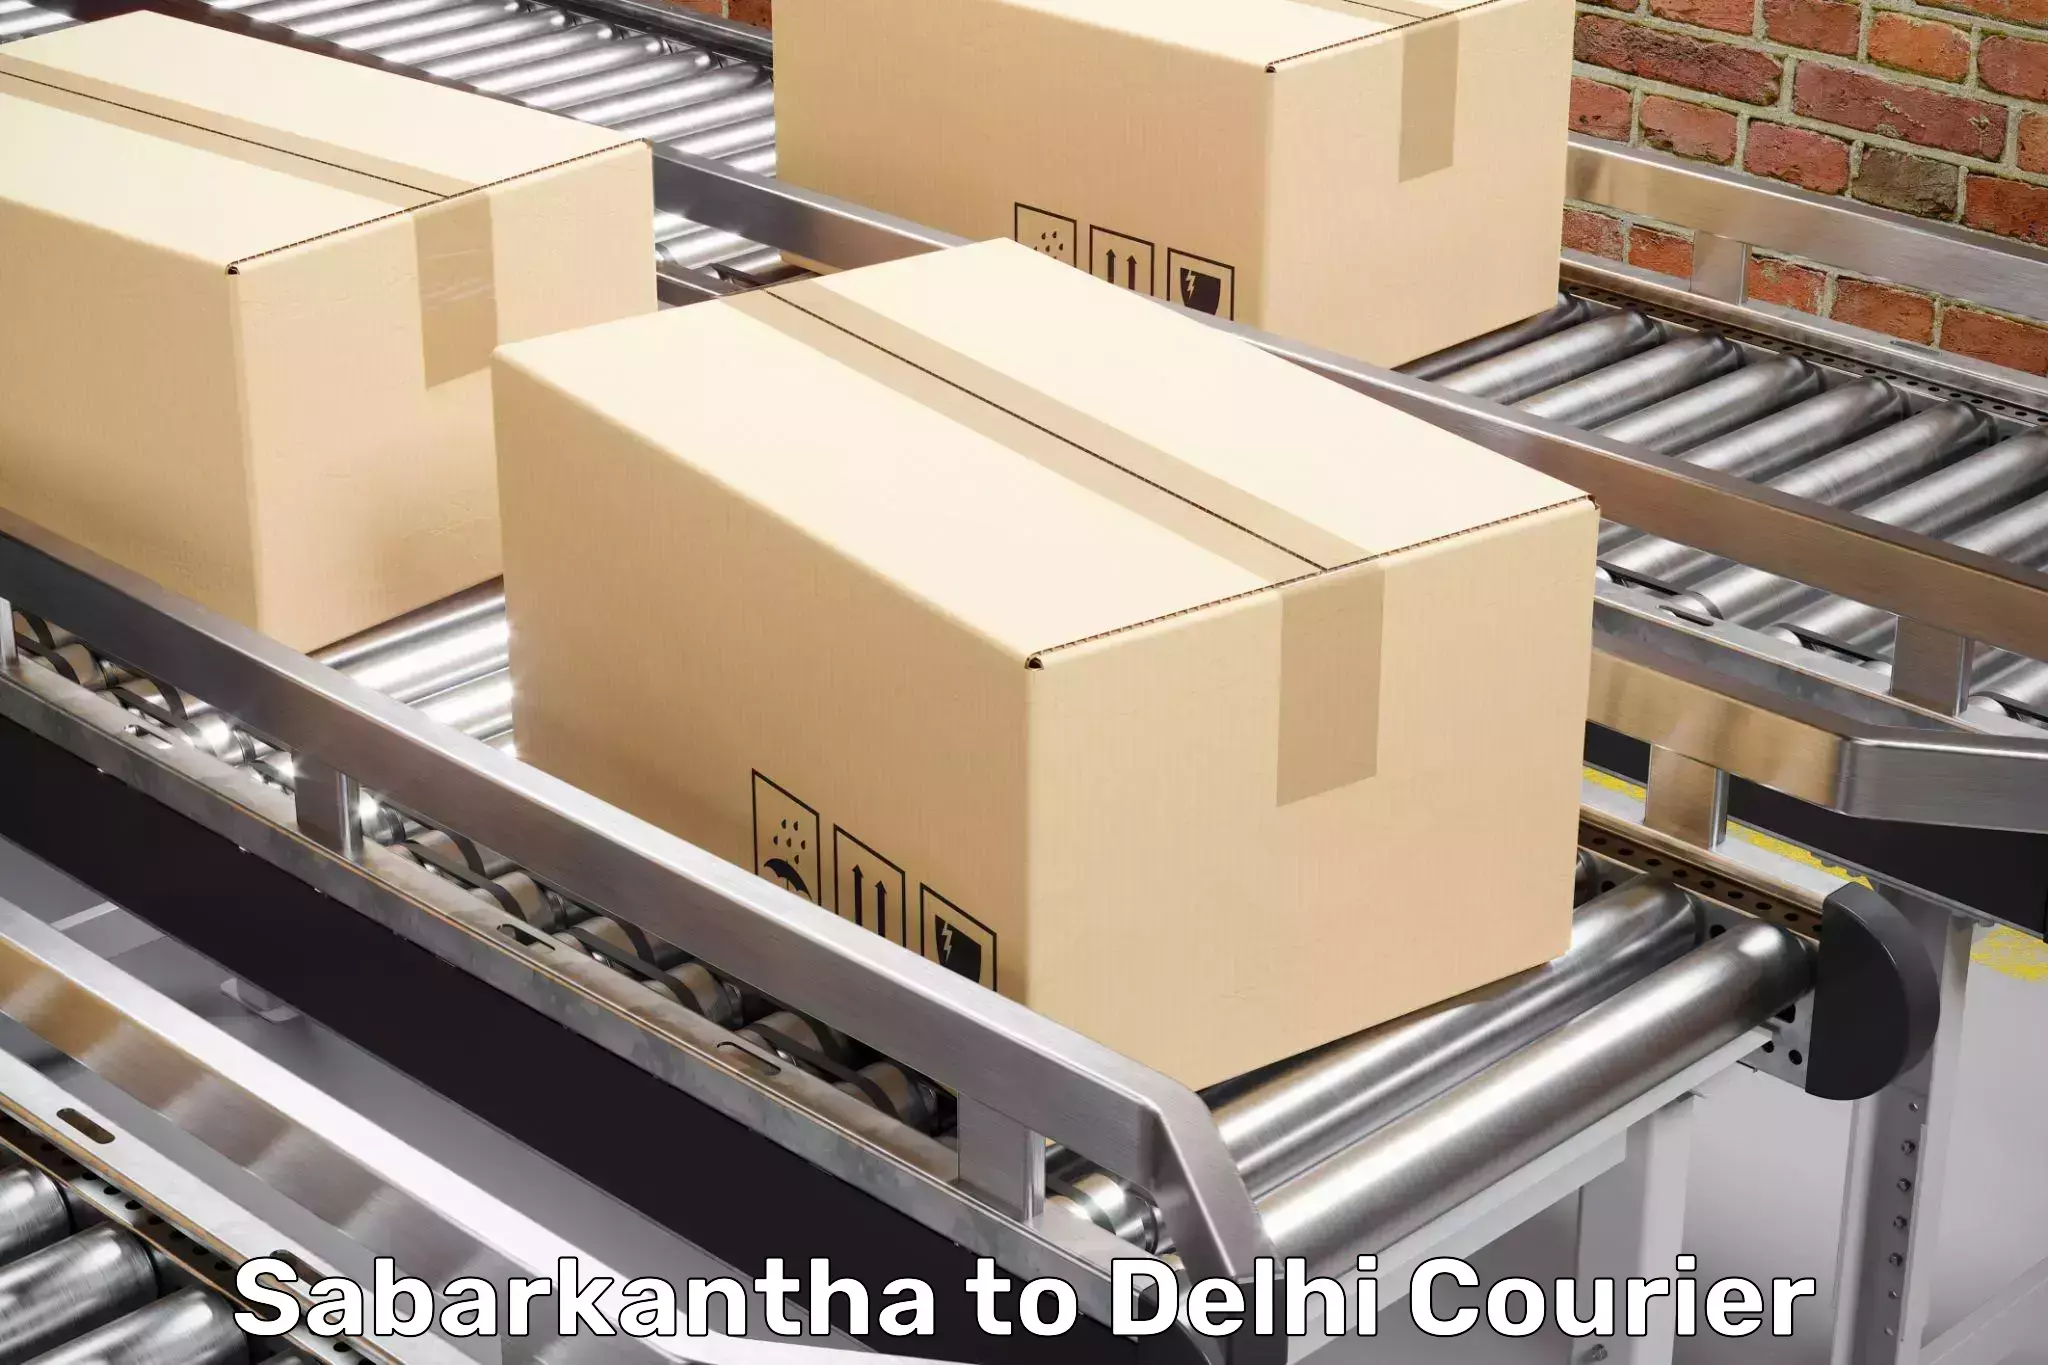 Furniture delivery service Sabarkantha to NIT Delhi